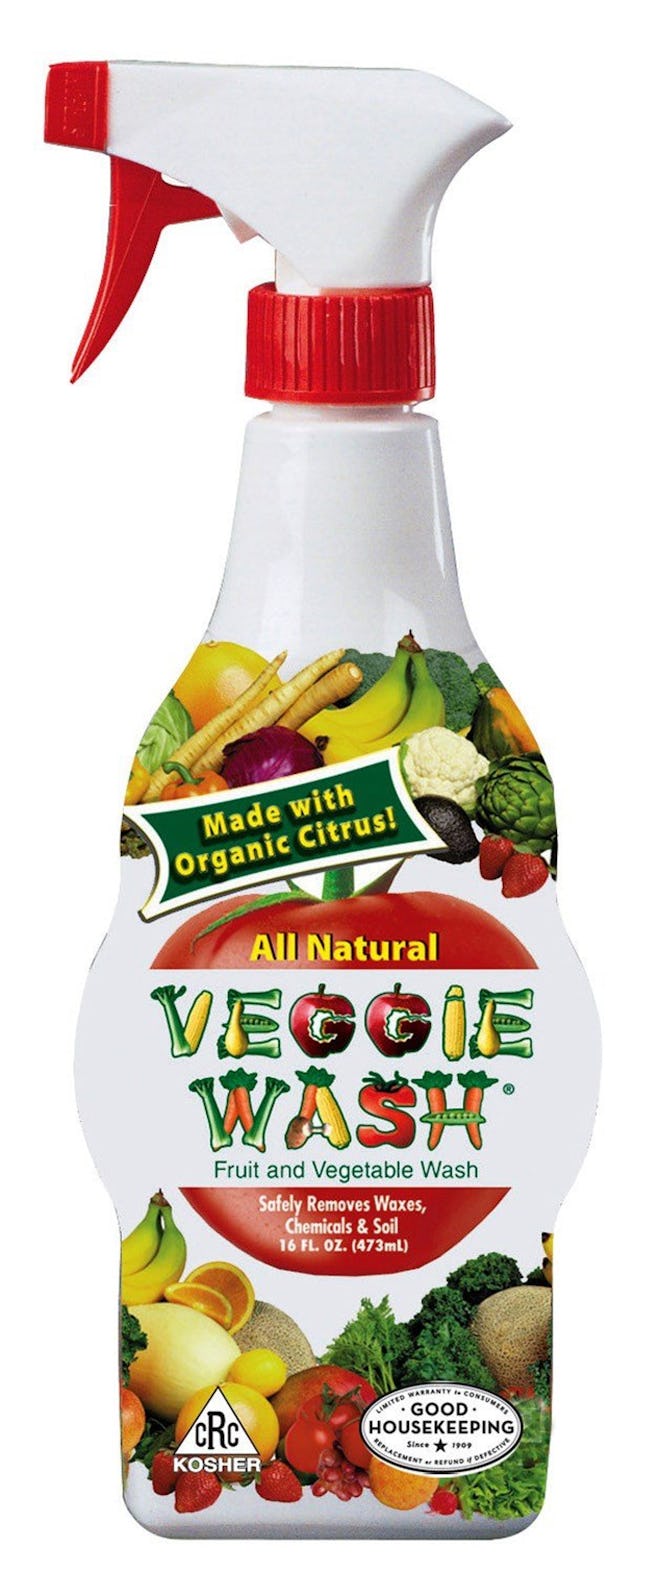 Veggie Wash Natural Fruit and Vegetable Wash